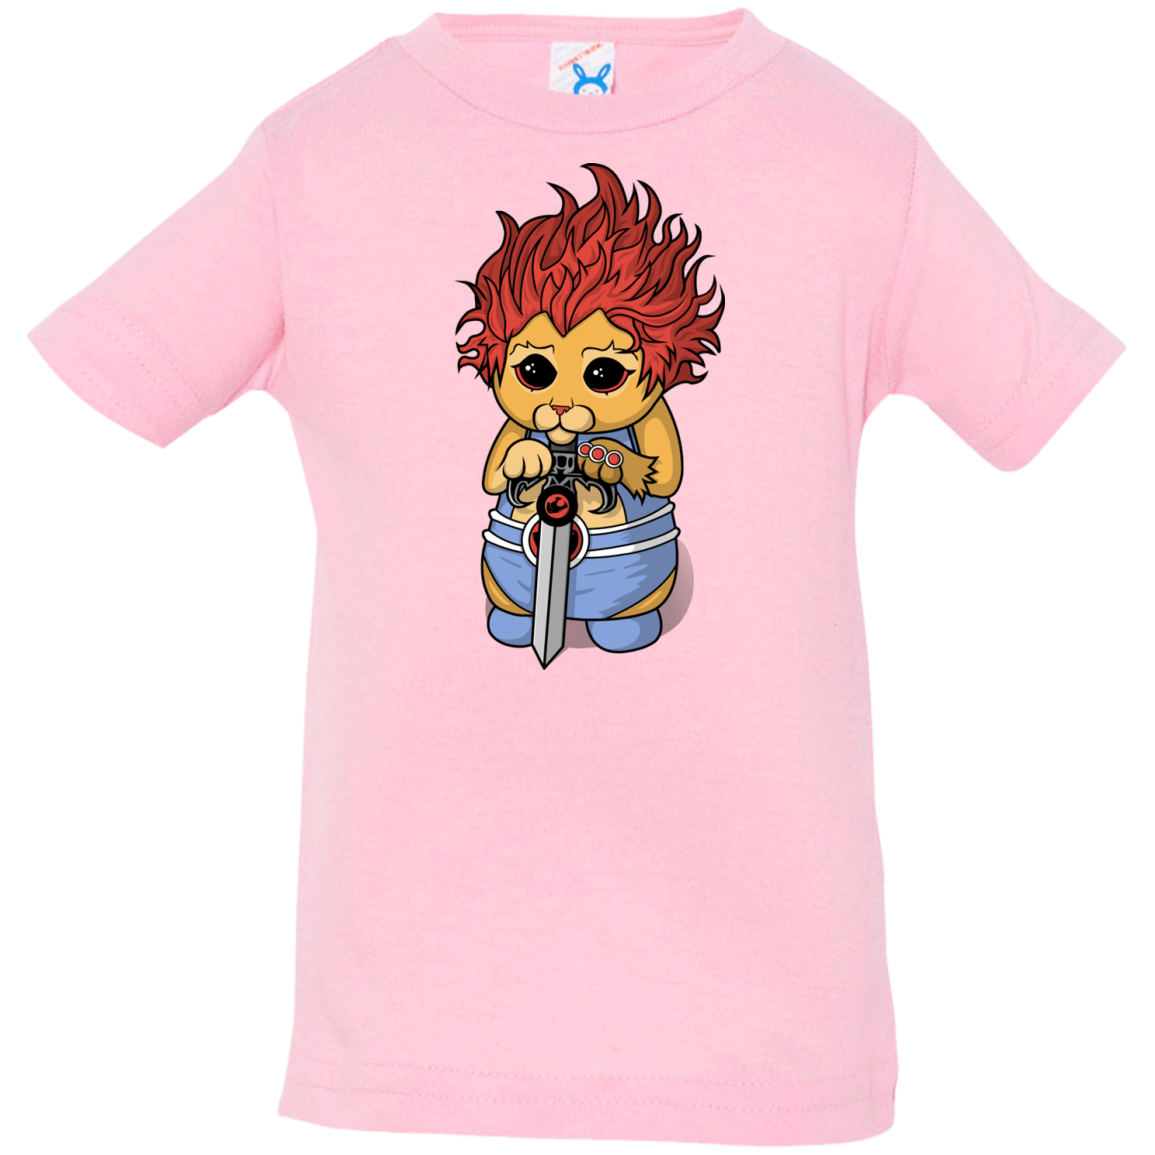 Thunder Kitty Infant Premium T-Shirt